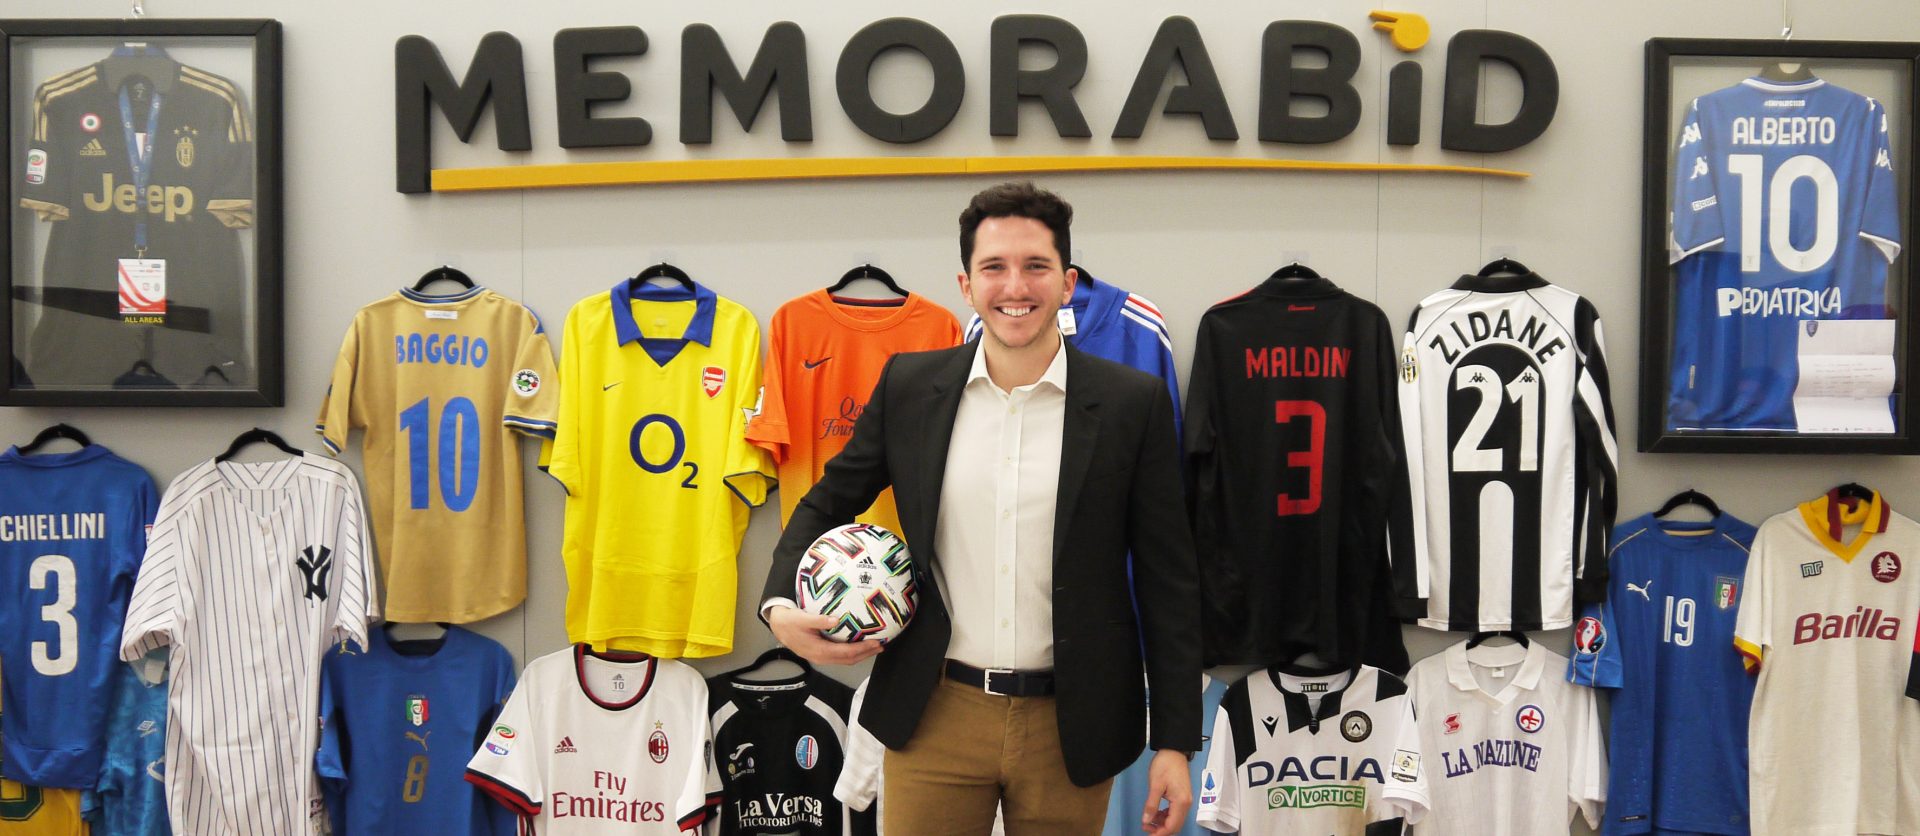 Alberto Zaccheti Ciriani con in mano un pallone da calcio, sullo sfondo la scritta "Memorabid" in alto e sotto magliette di calciatori appese